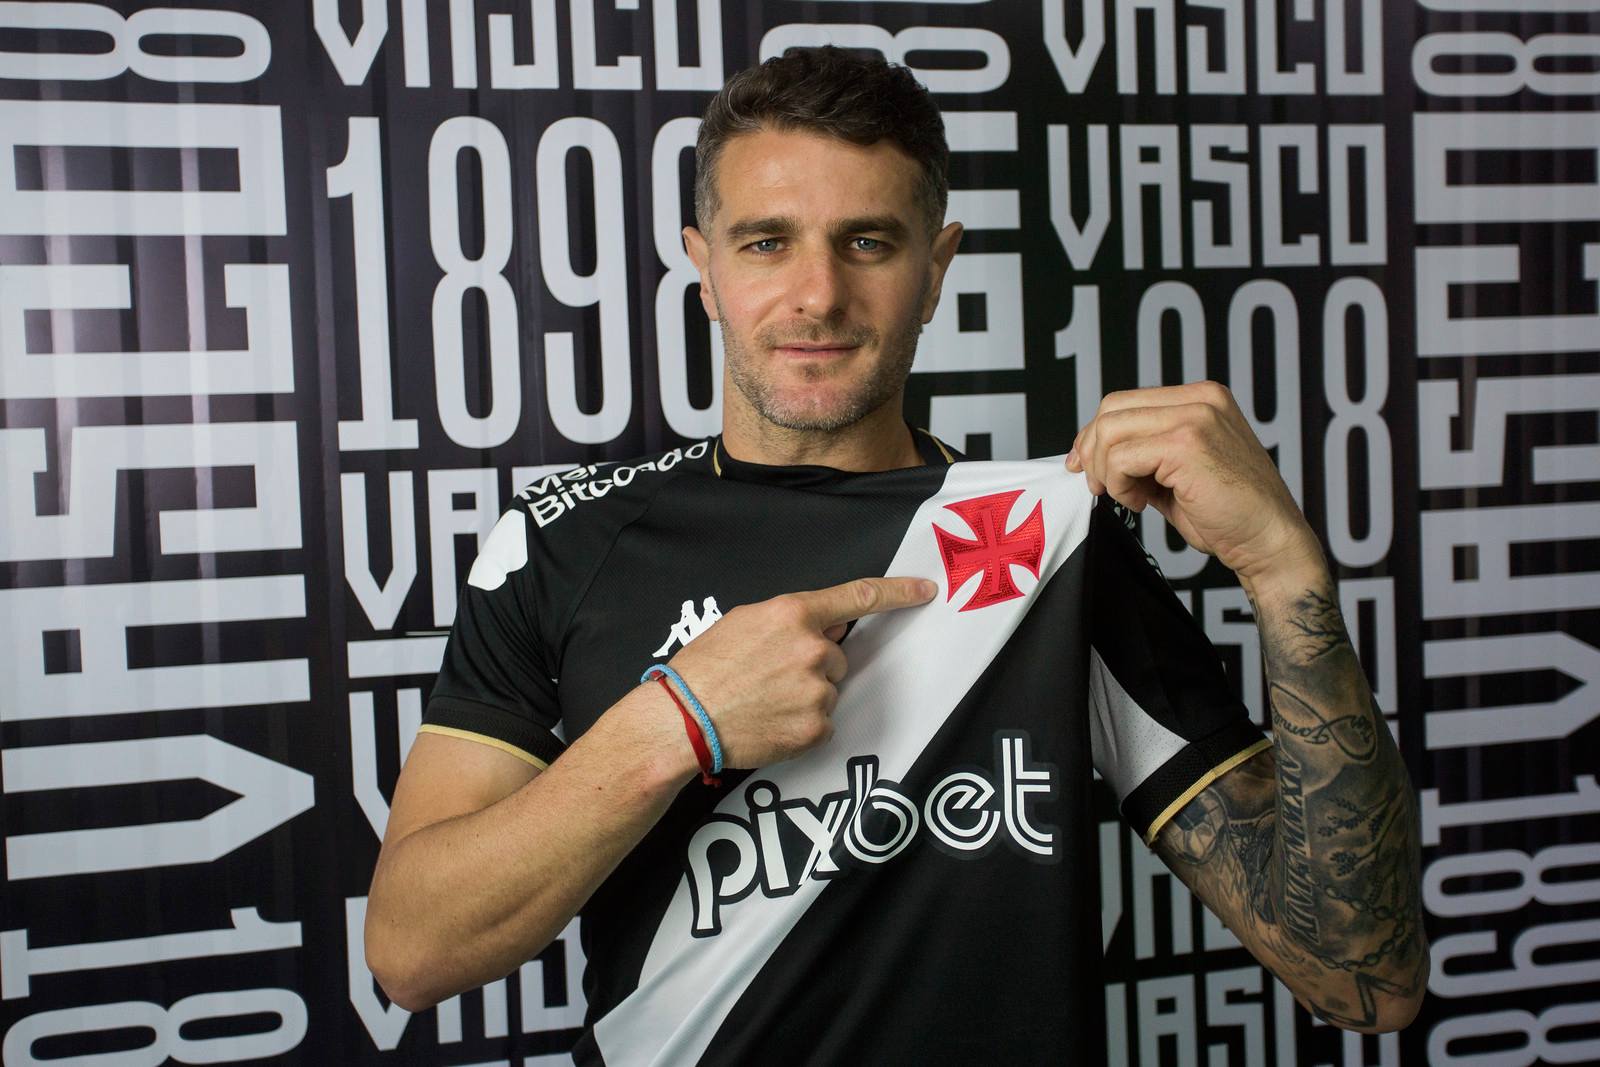 Pablo Vegetti veste camisa do Vasco